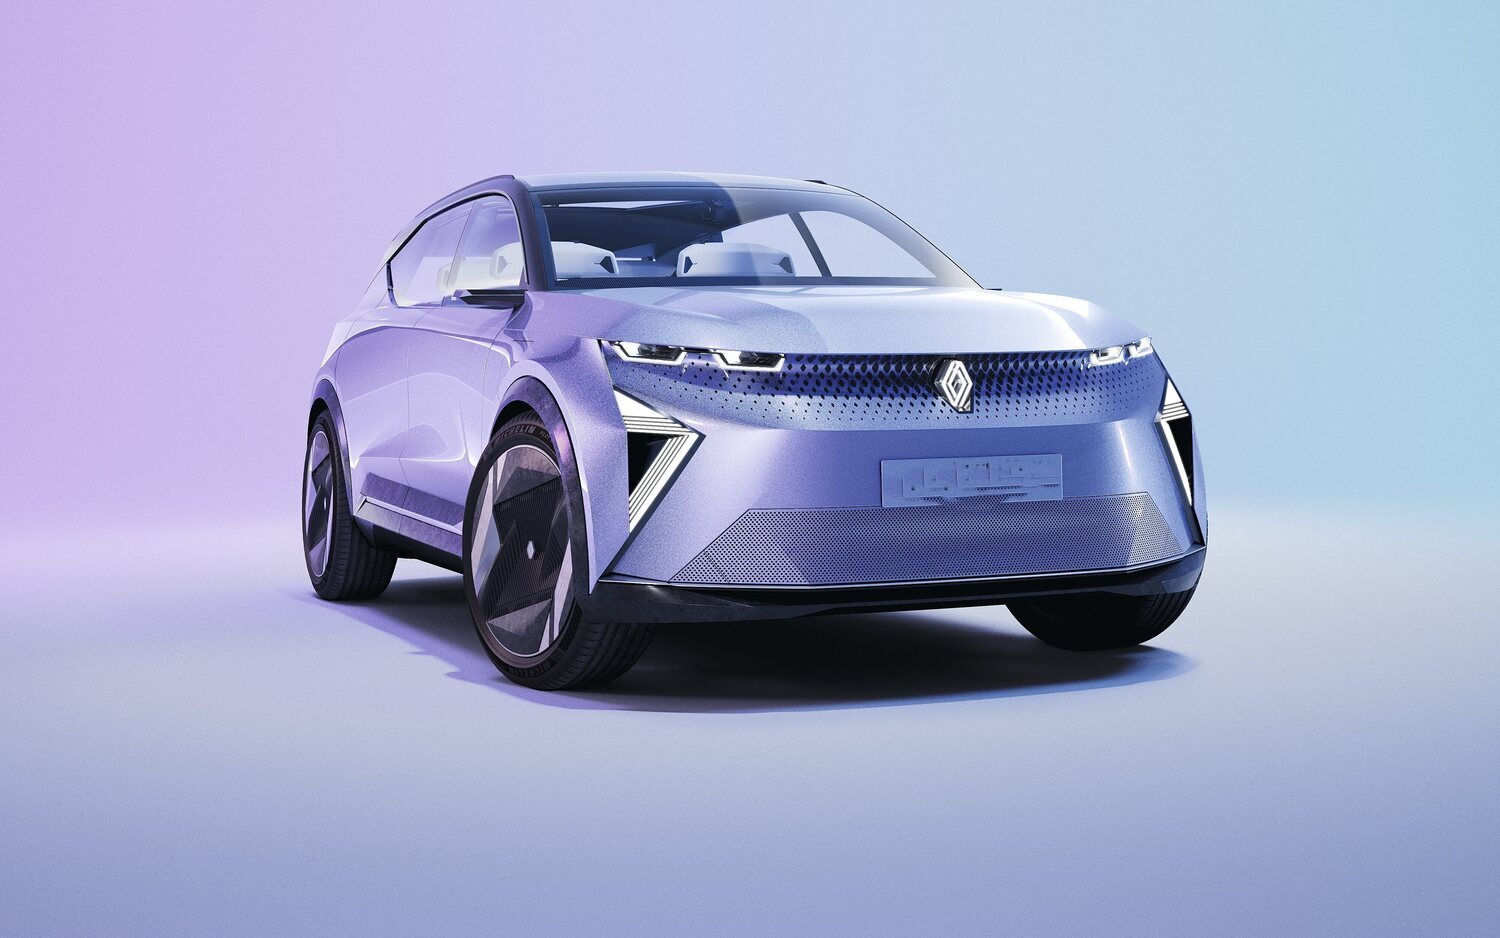 Renault ya trabaja en su nuevo "Twingo" eléctrico